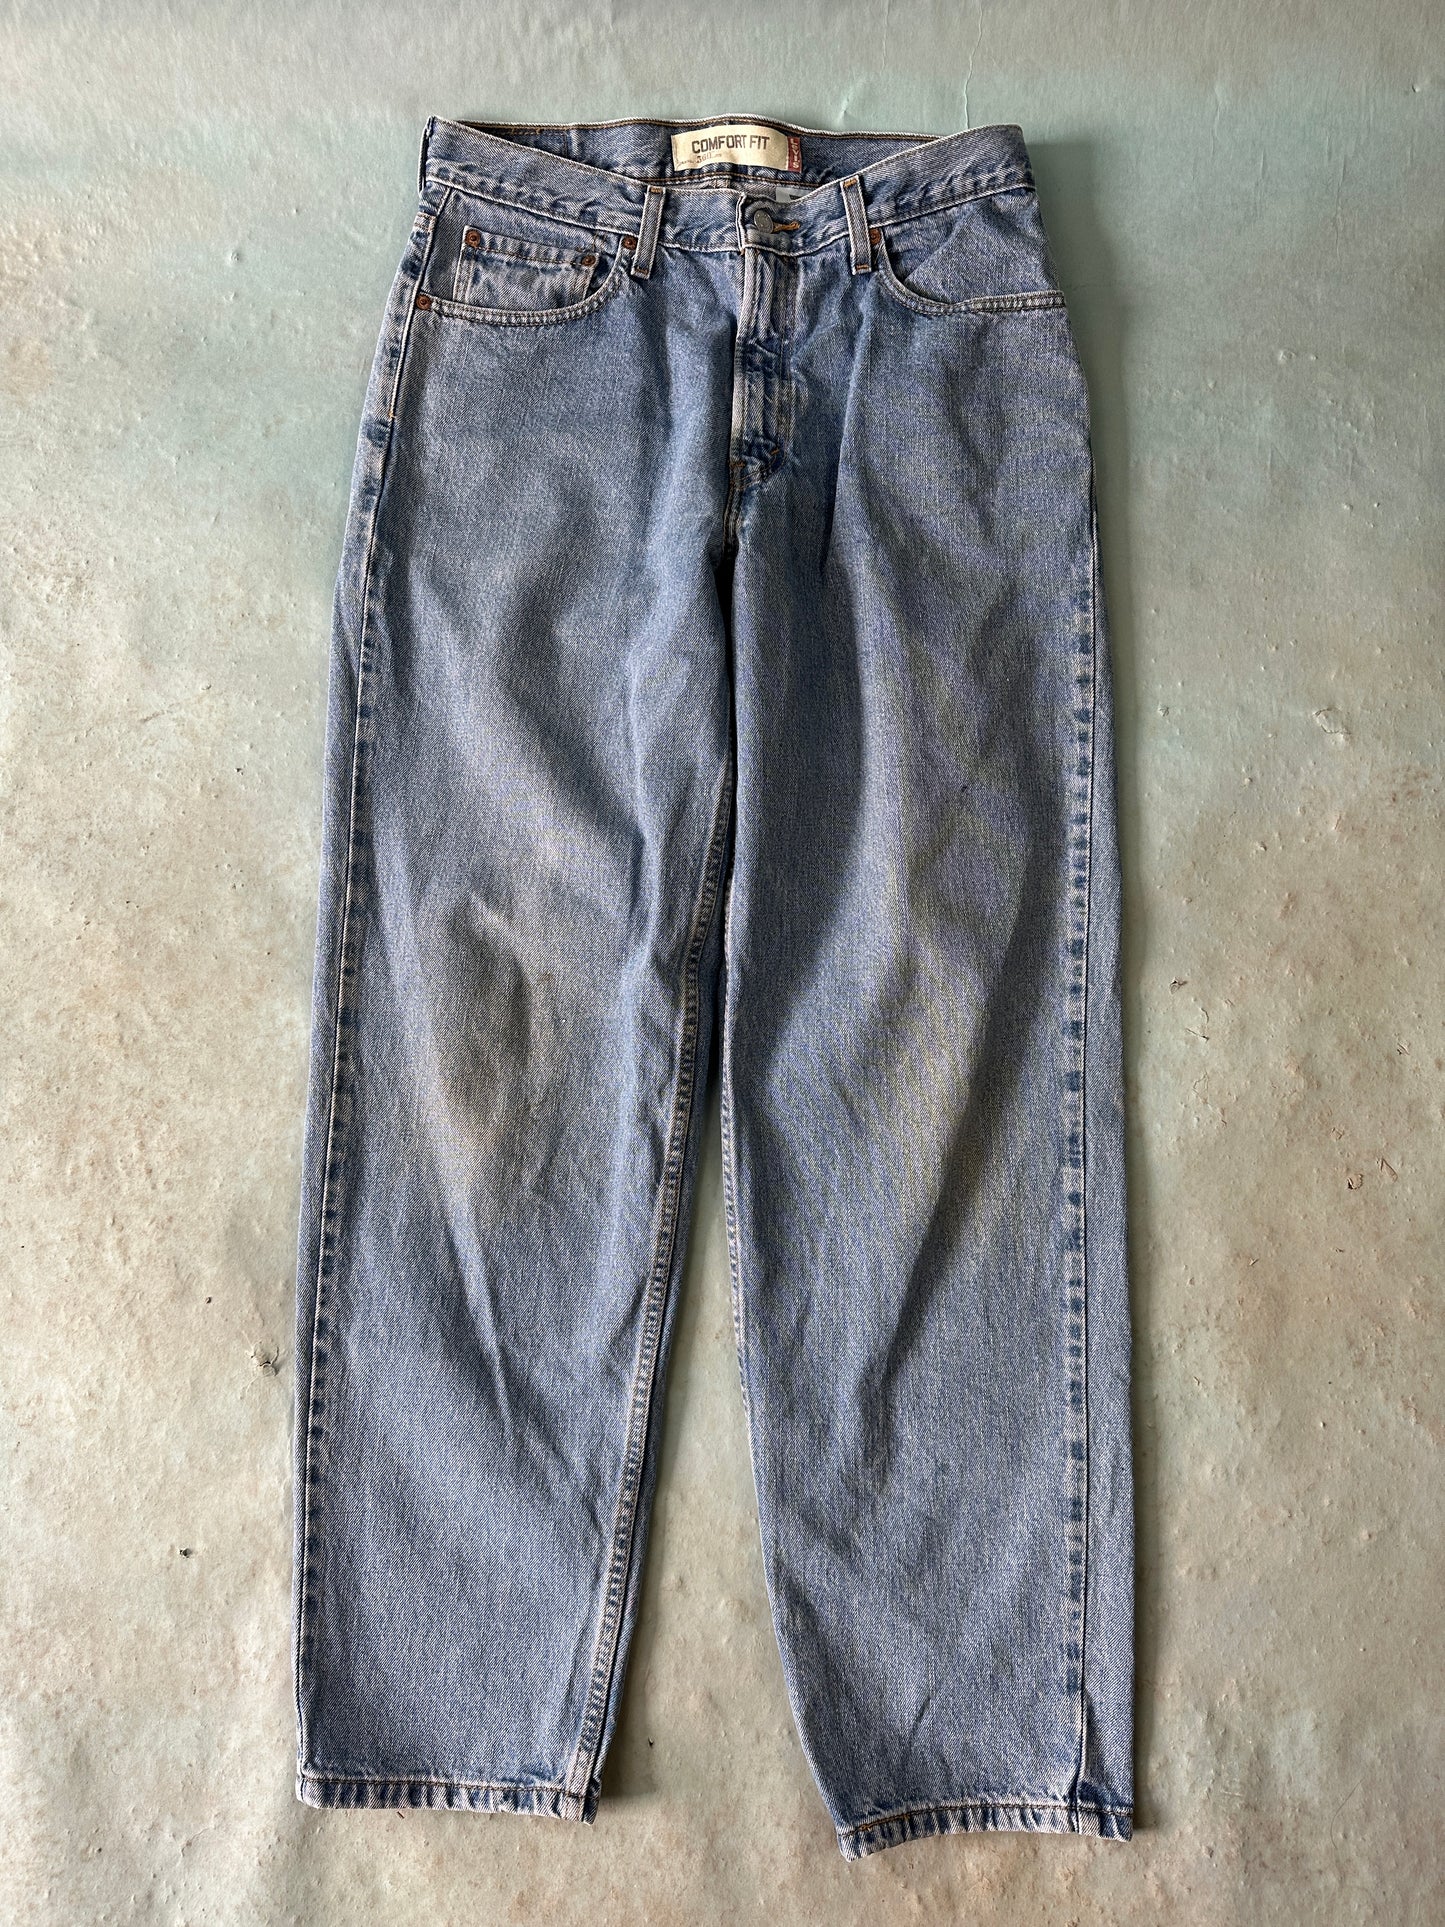 Levis 560 Vintage Jeans - 33 x 32